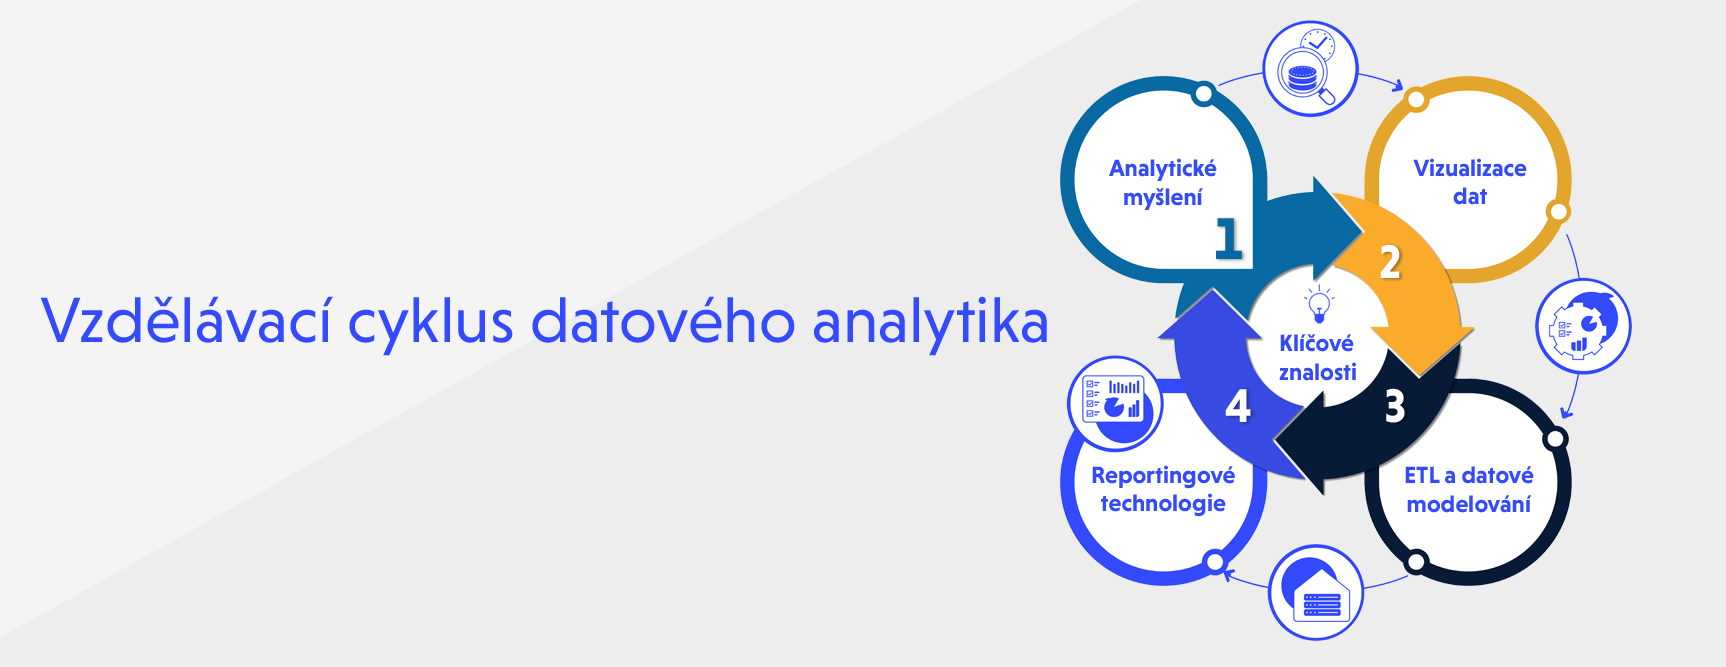 Cyklus datového analytika